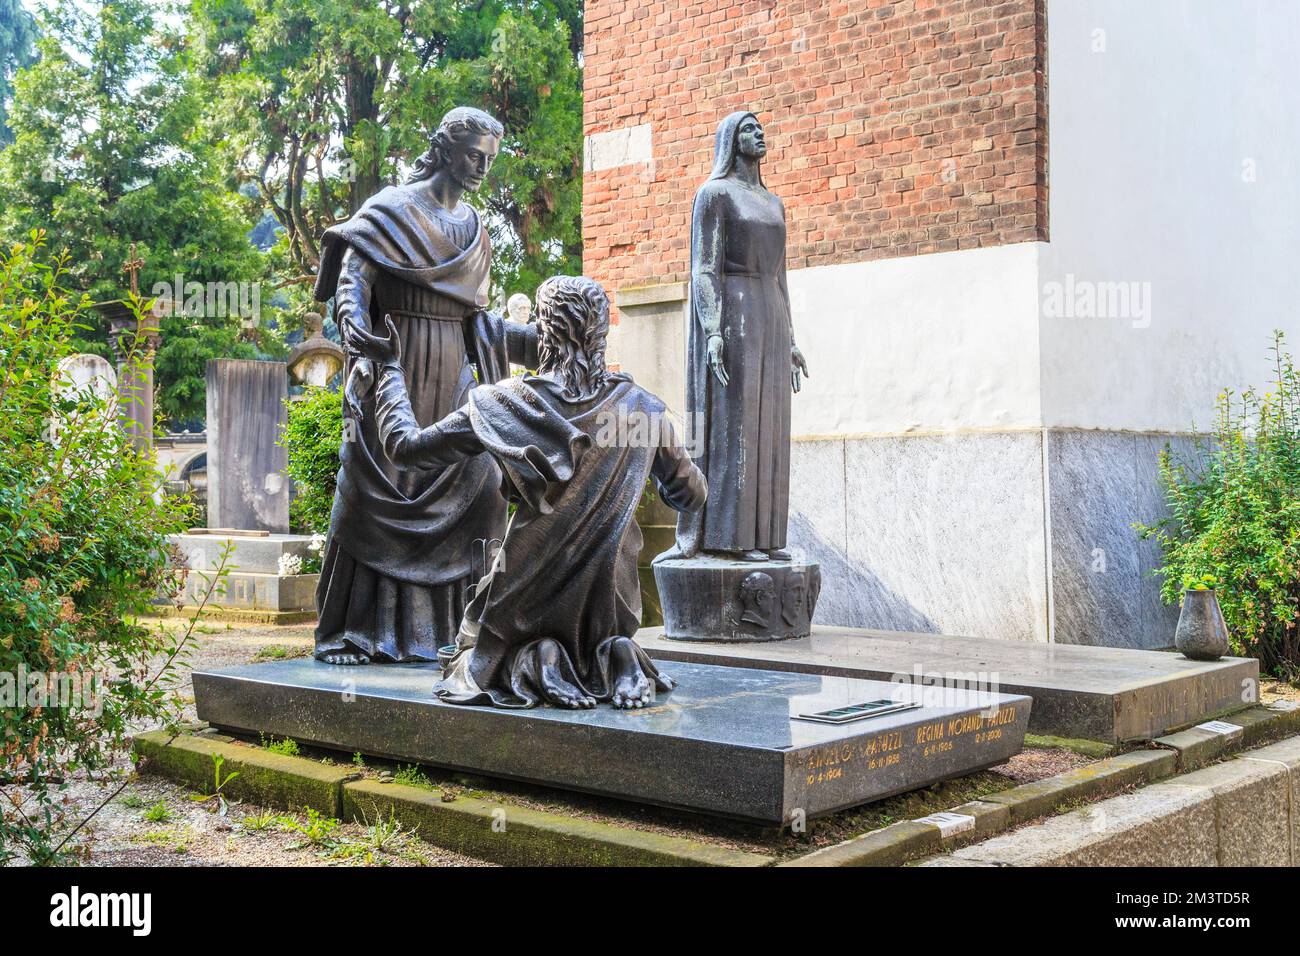 MAILAND, ITALIEN - 17. MAI 2018: Dies ist einer der Grabsteine auf dem Monumentalen Friedhof, der als einer der reichsten Grabsteine und Denkmäler in gilt Stockfoto